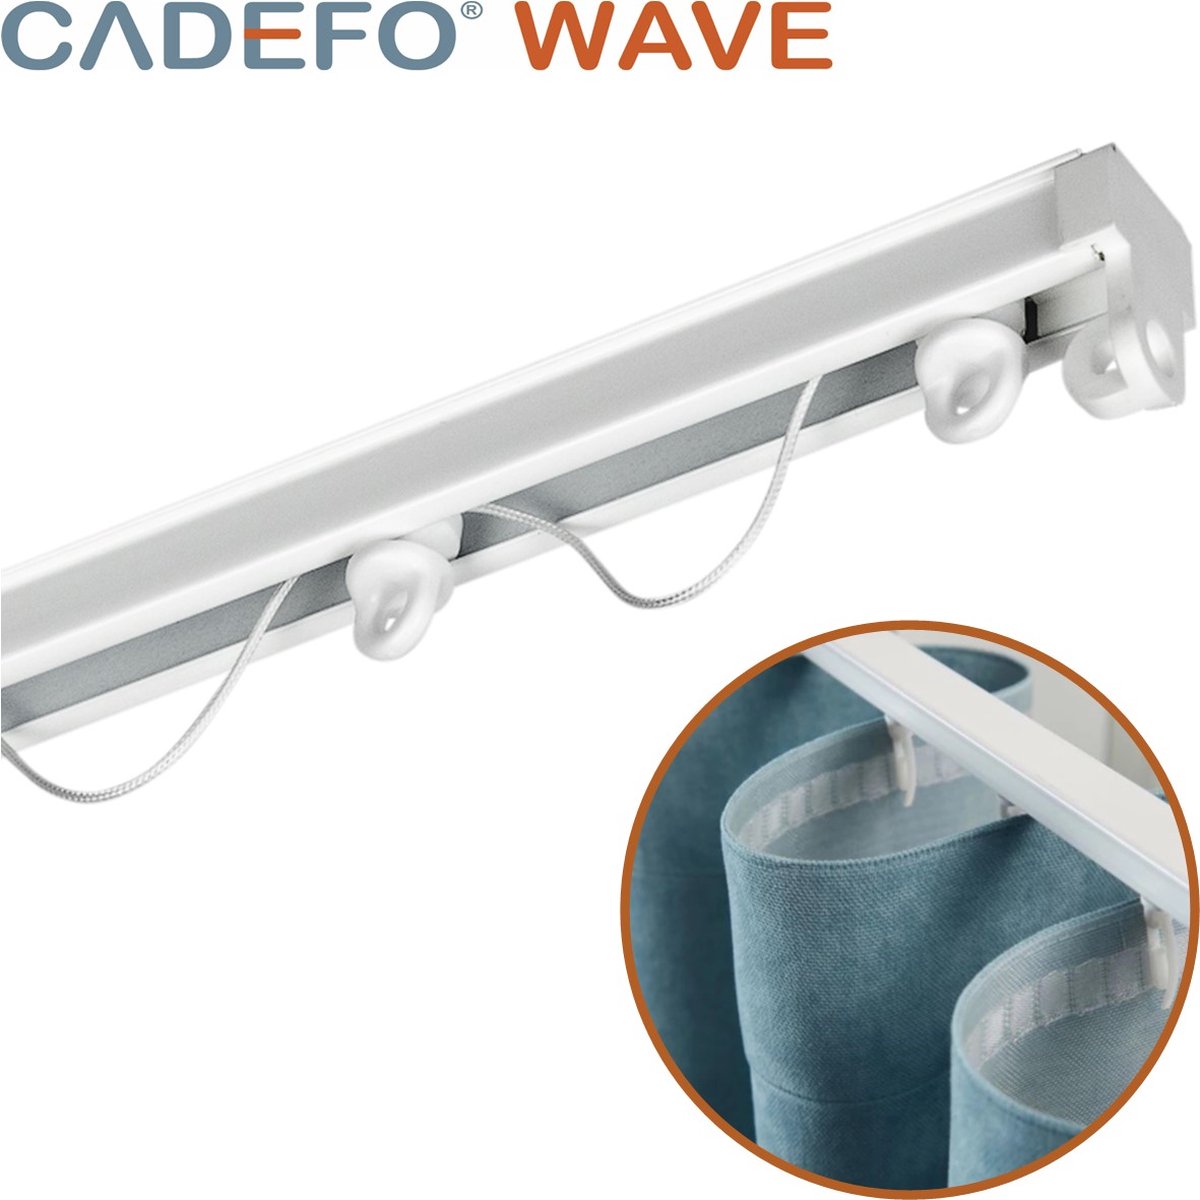 CADEFO WAVE (501 - 550 cm) Gordijnrails - Compleet op maat! - UIT 1 STUK - Leverbaar tot 6 meter - Plafondbevestiging - Lengte 539 cm